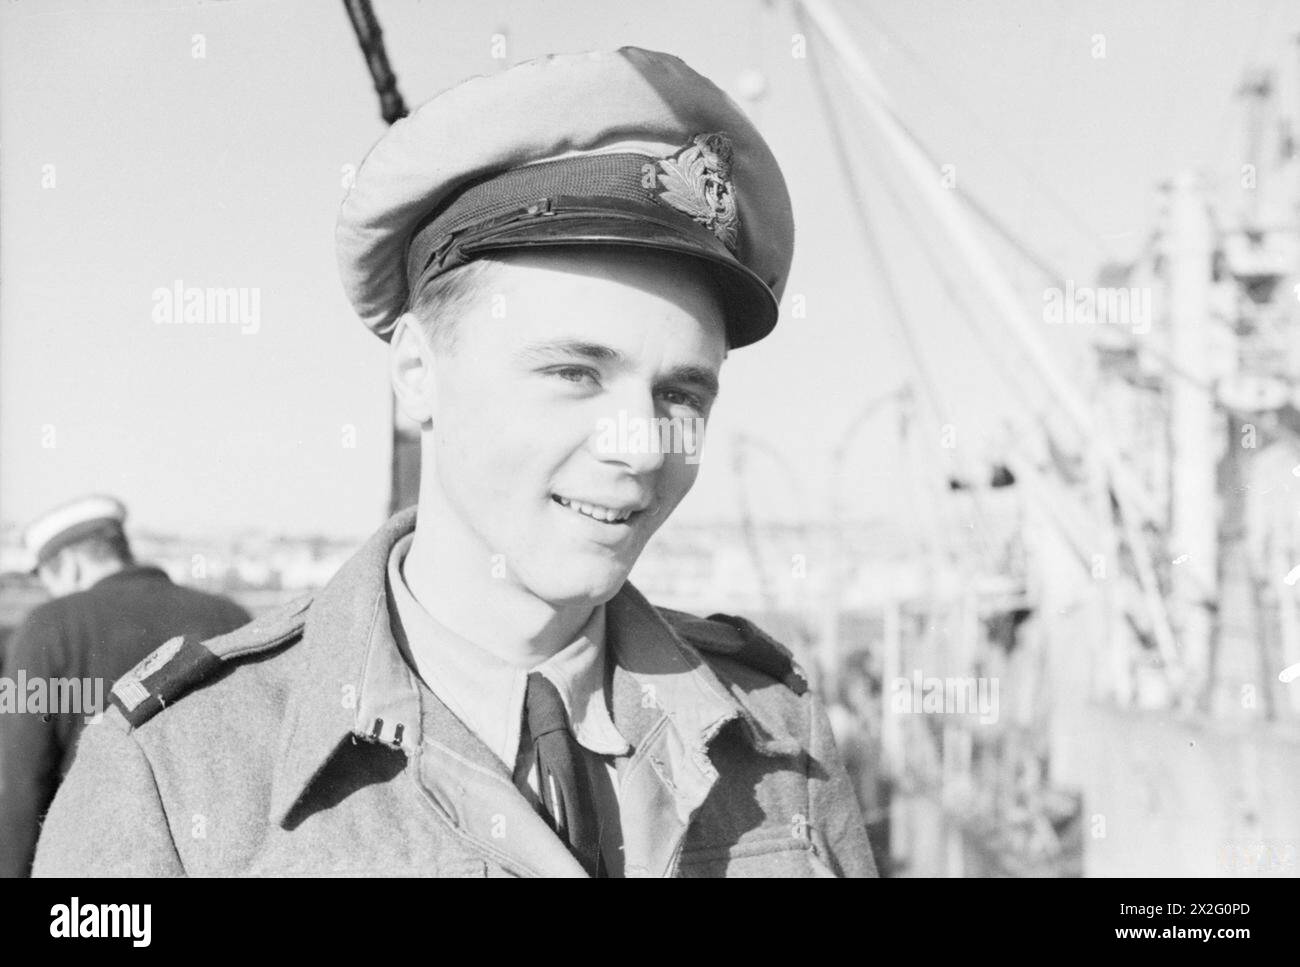 SOUS-MARINS ET OFFICIERS DE SOUS-MARINS. 4 FÉVRIER 1943, MALTE. - Sous-lieutenant N d Campbell, RN, 5e officier, HMS TROOPER Banque D'Images